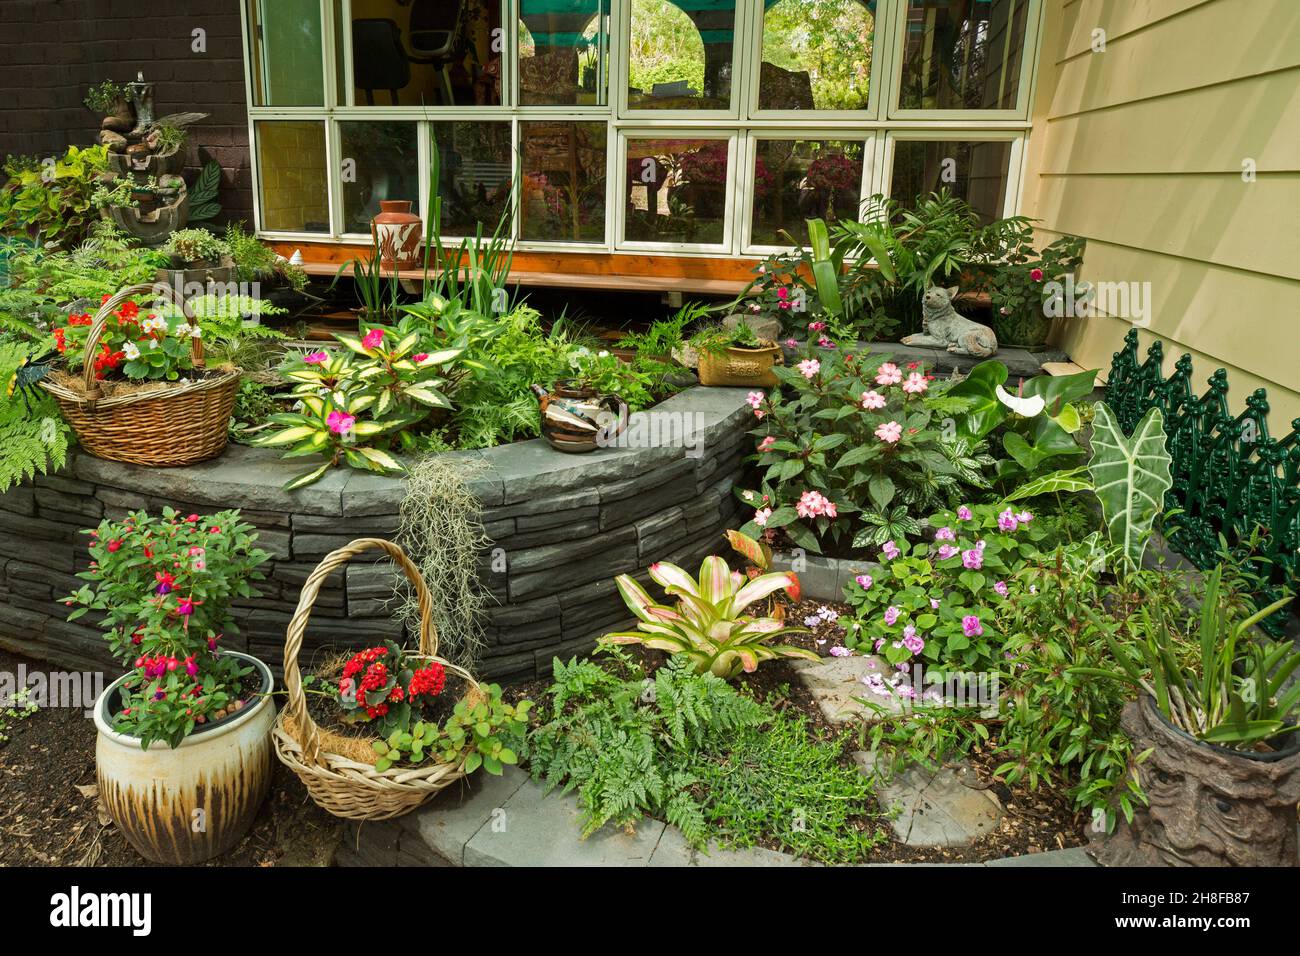 Spettacolare giardino cortile con pareti decorative e masse di fiori colorati, felci, piante con fogliame colorato, alcuni in contenitori ornati Foto Stock